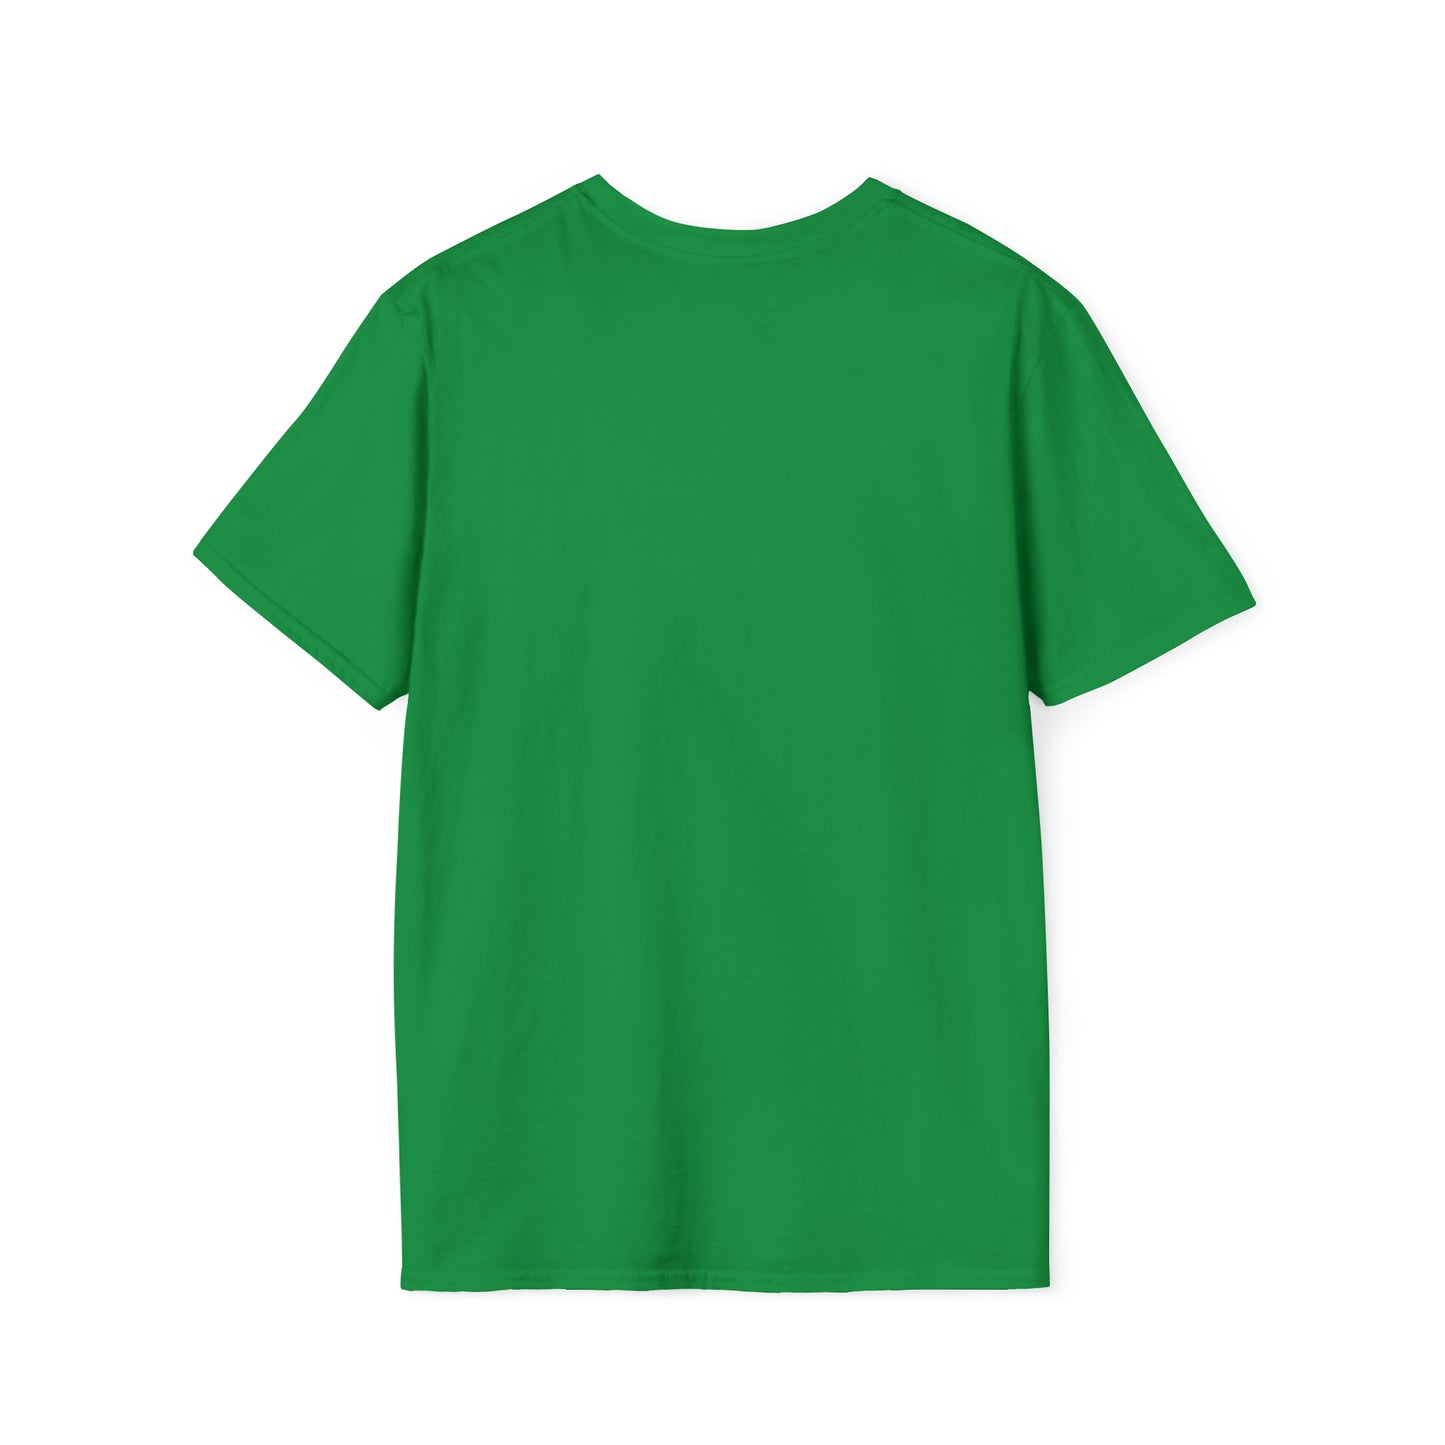 Pricele$$™  Unisex Softstyle T-Shirt